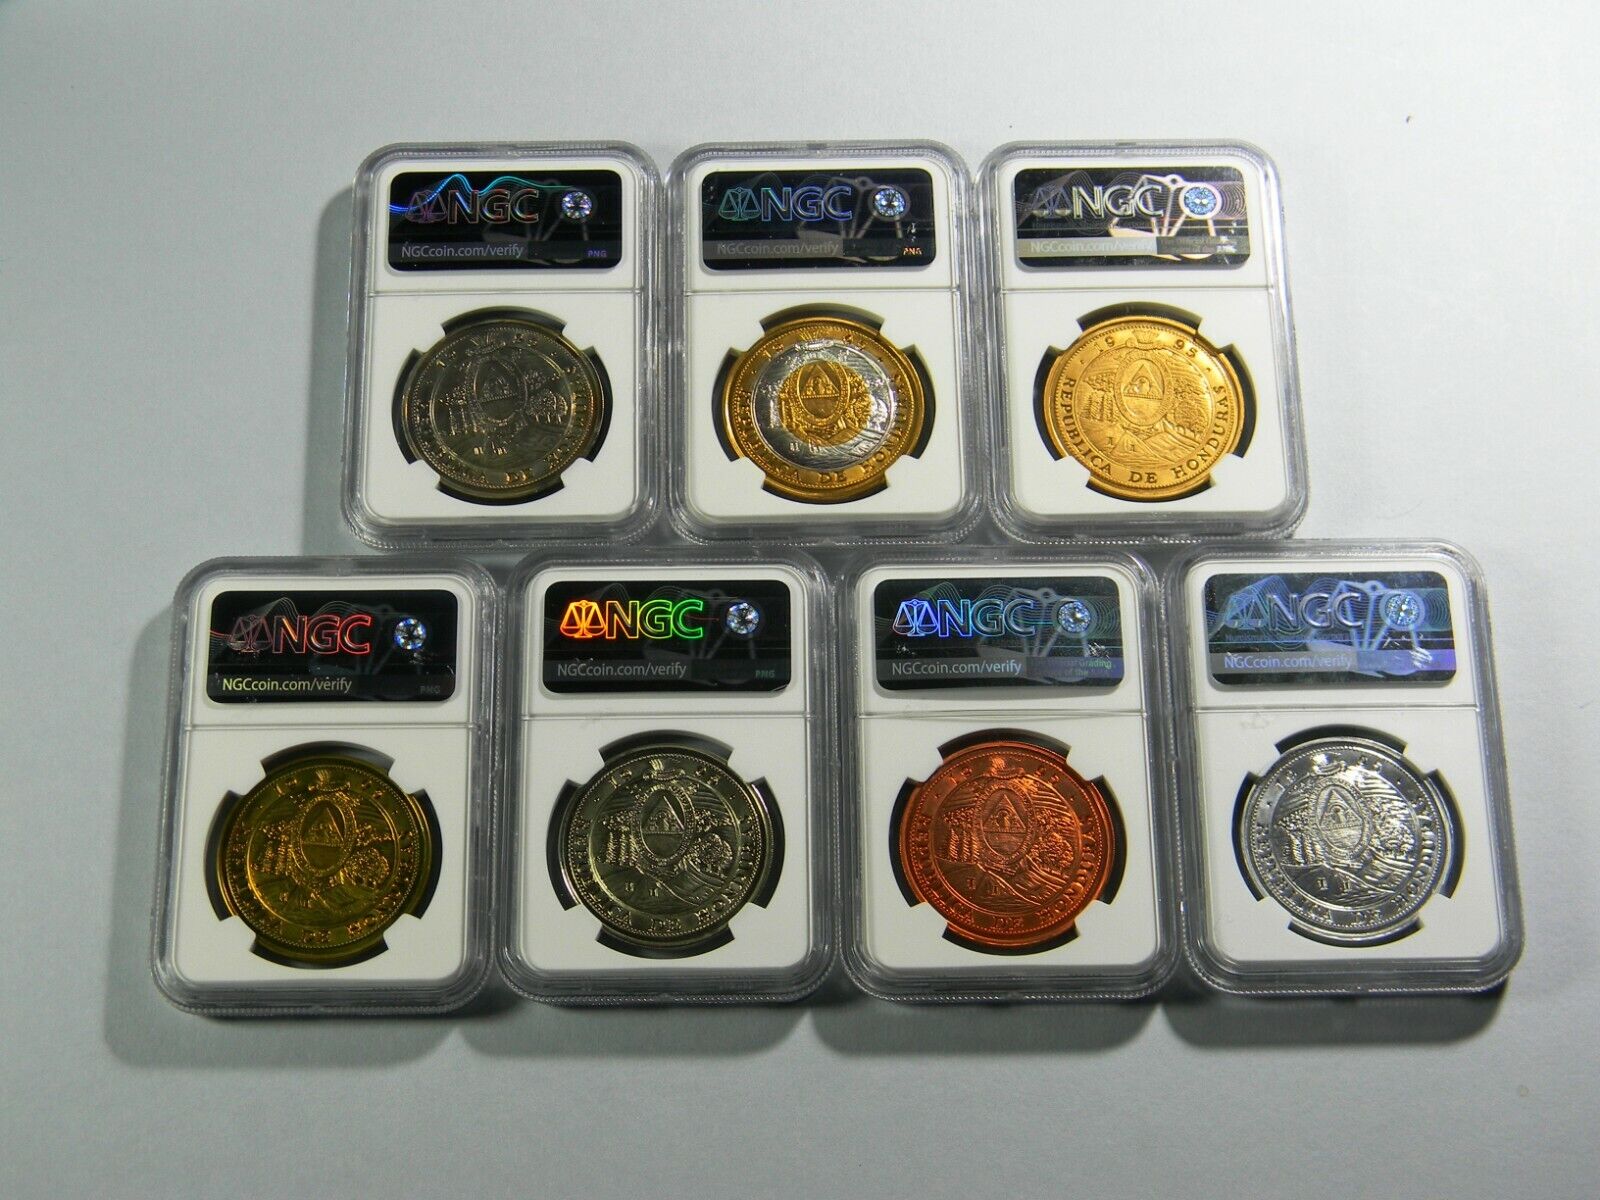 1995 Honduras 10 Lempiras 7 coin Lot NGC Certified  Без бренда - фотография #2